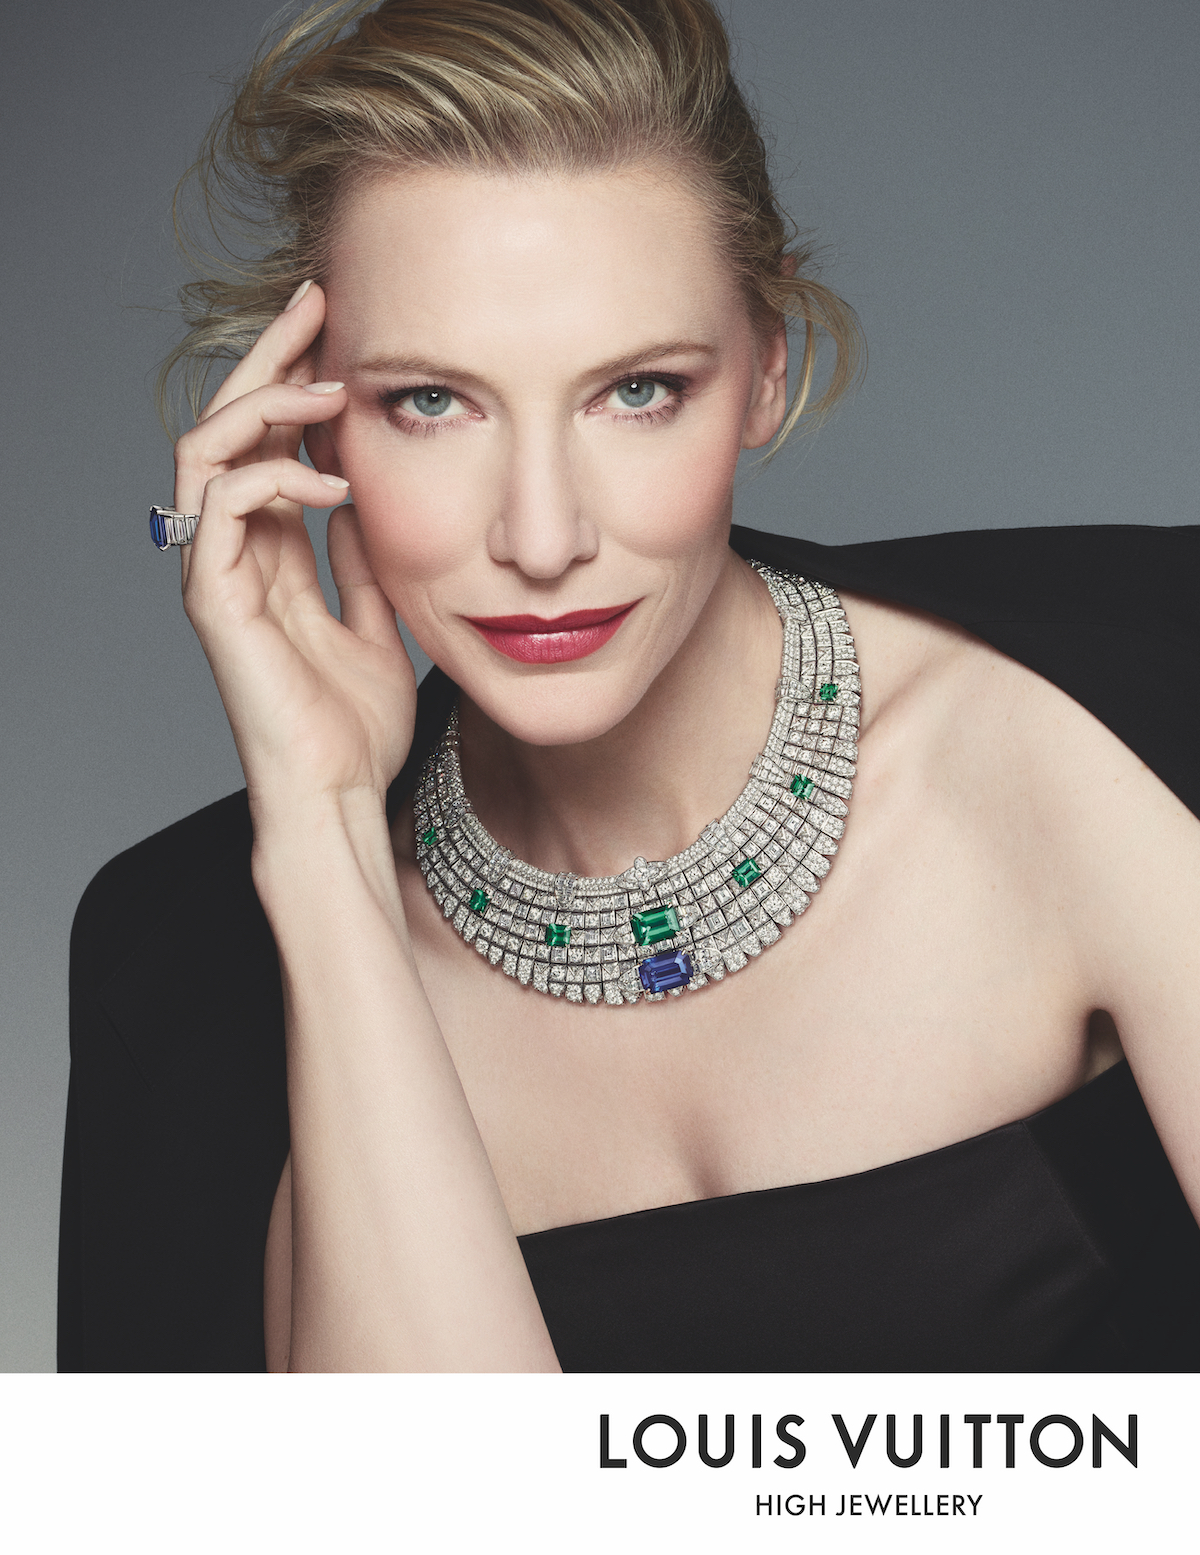 Cate Blanchett for Louis Vuitton Spirit High Jewellery